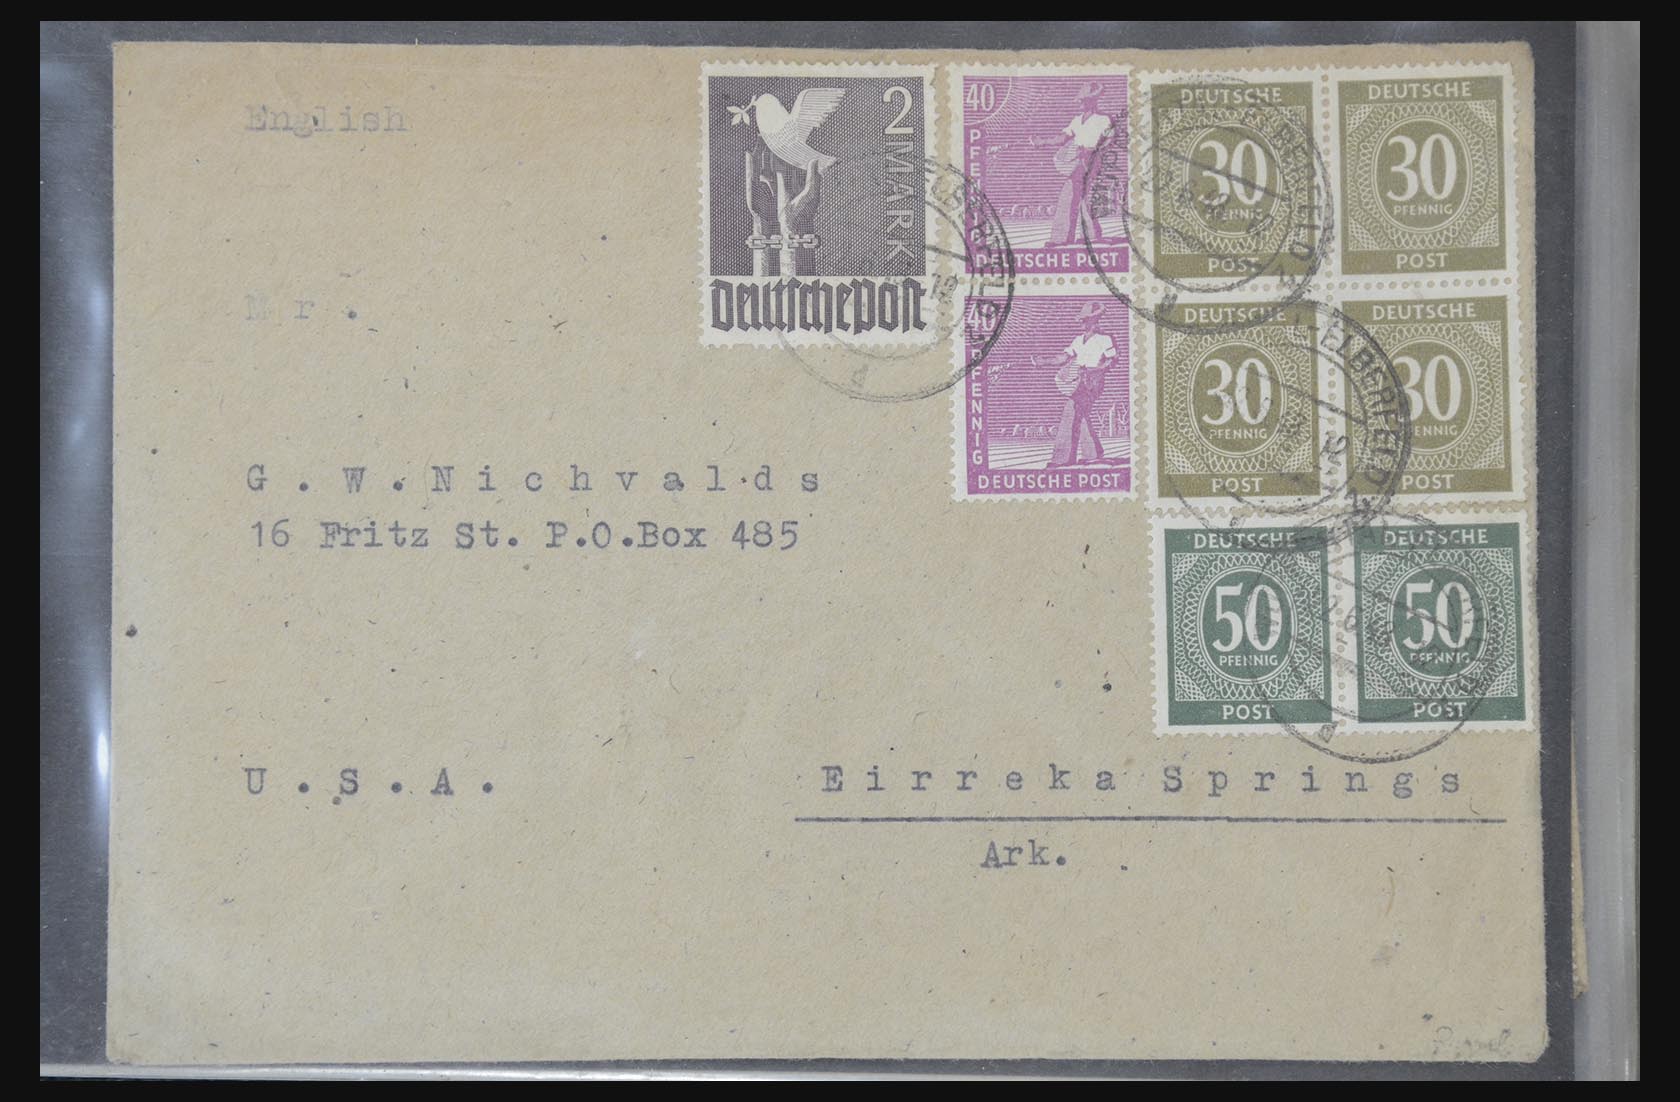 31581 025 - 31581 Duitsland brieven en FDC's 1945-1981.